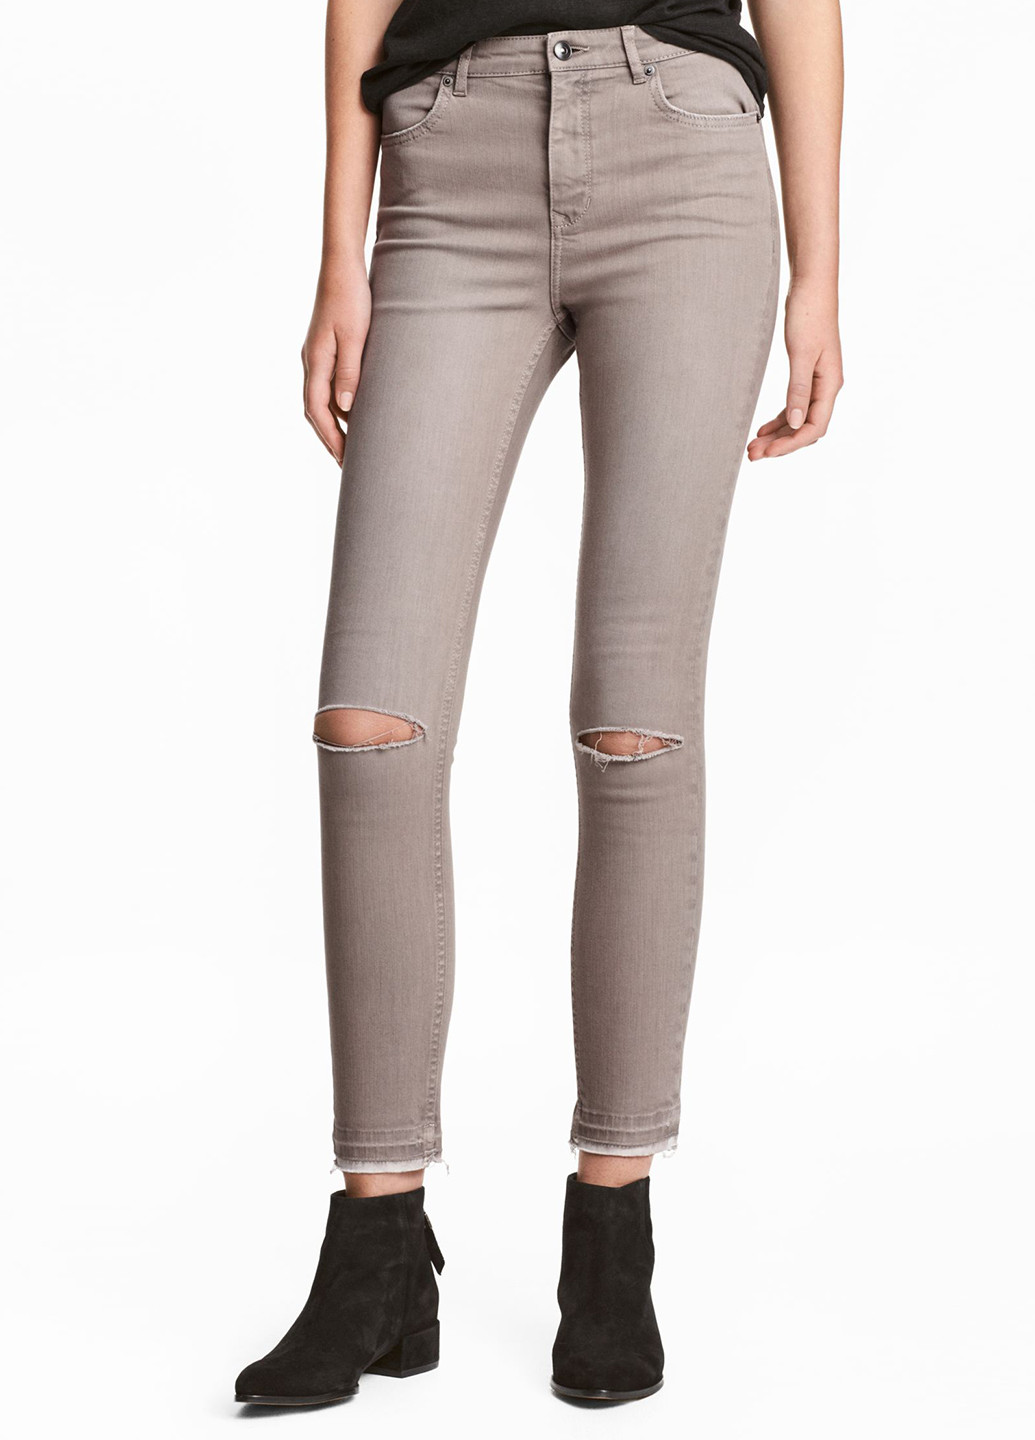 Бежевые джинсовые демисезонные зауженные брюки H&M